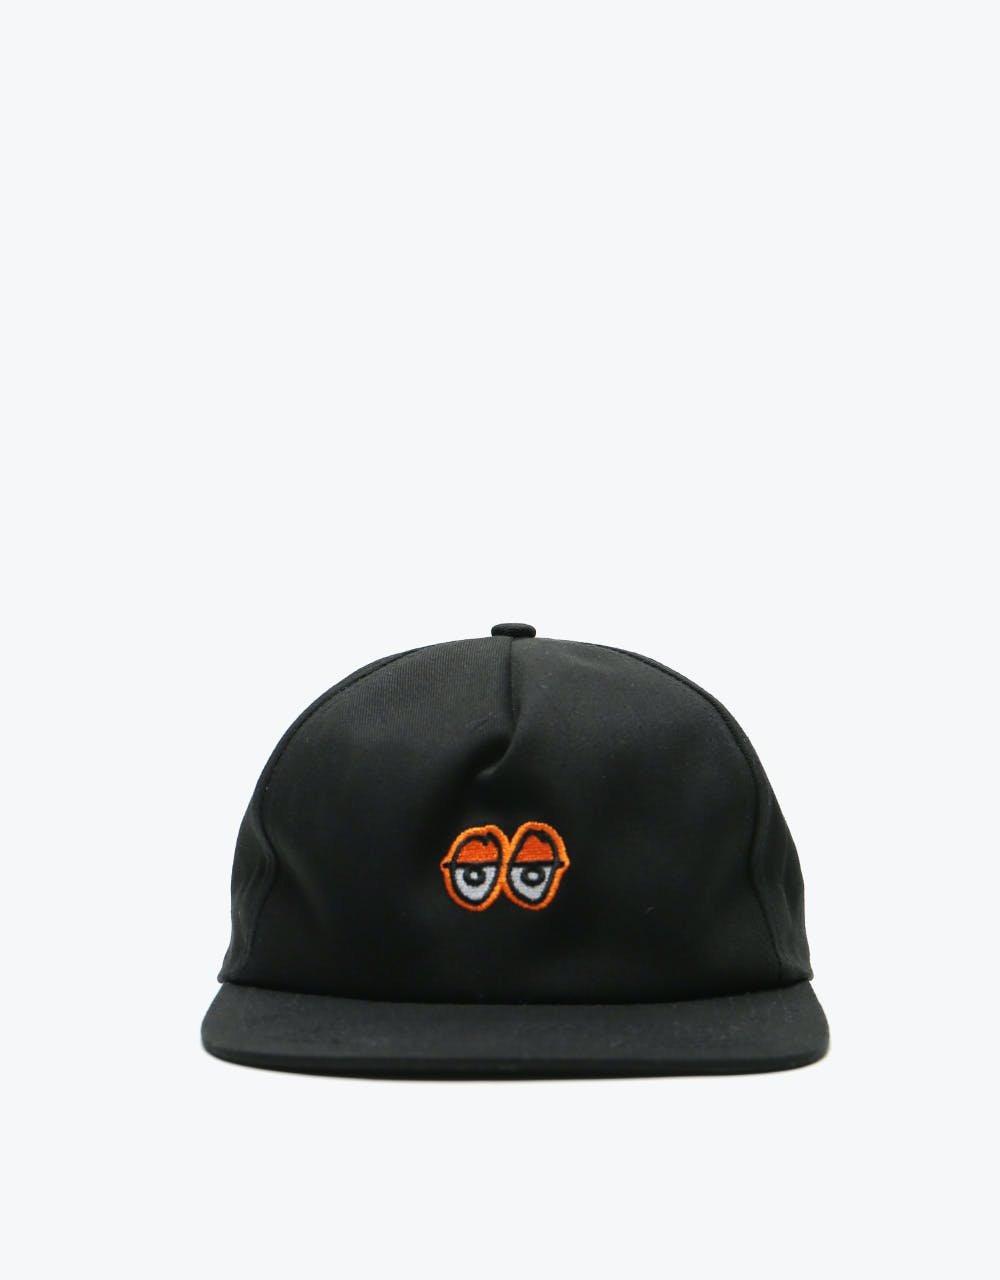 Krooked Eyes Snapback Cap - Black/Orange